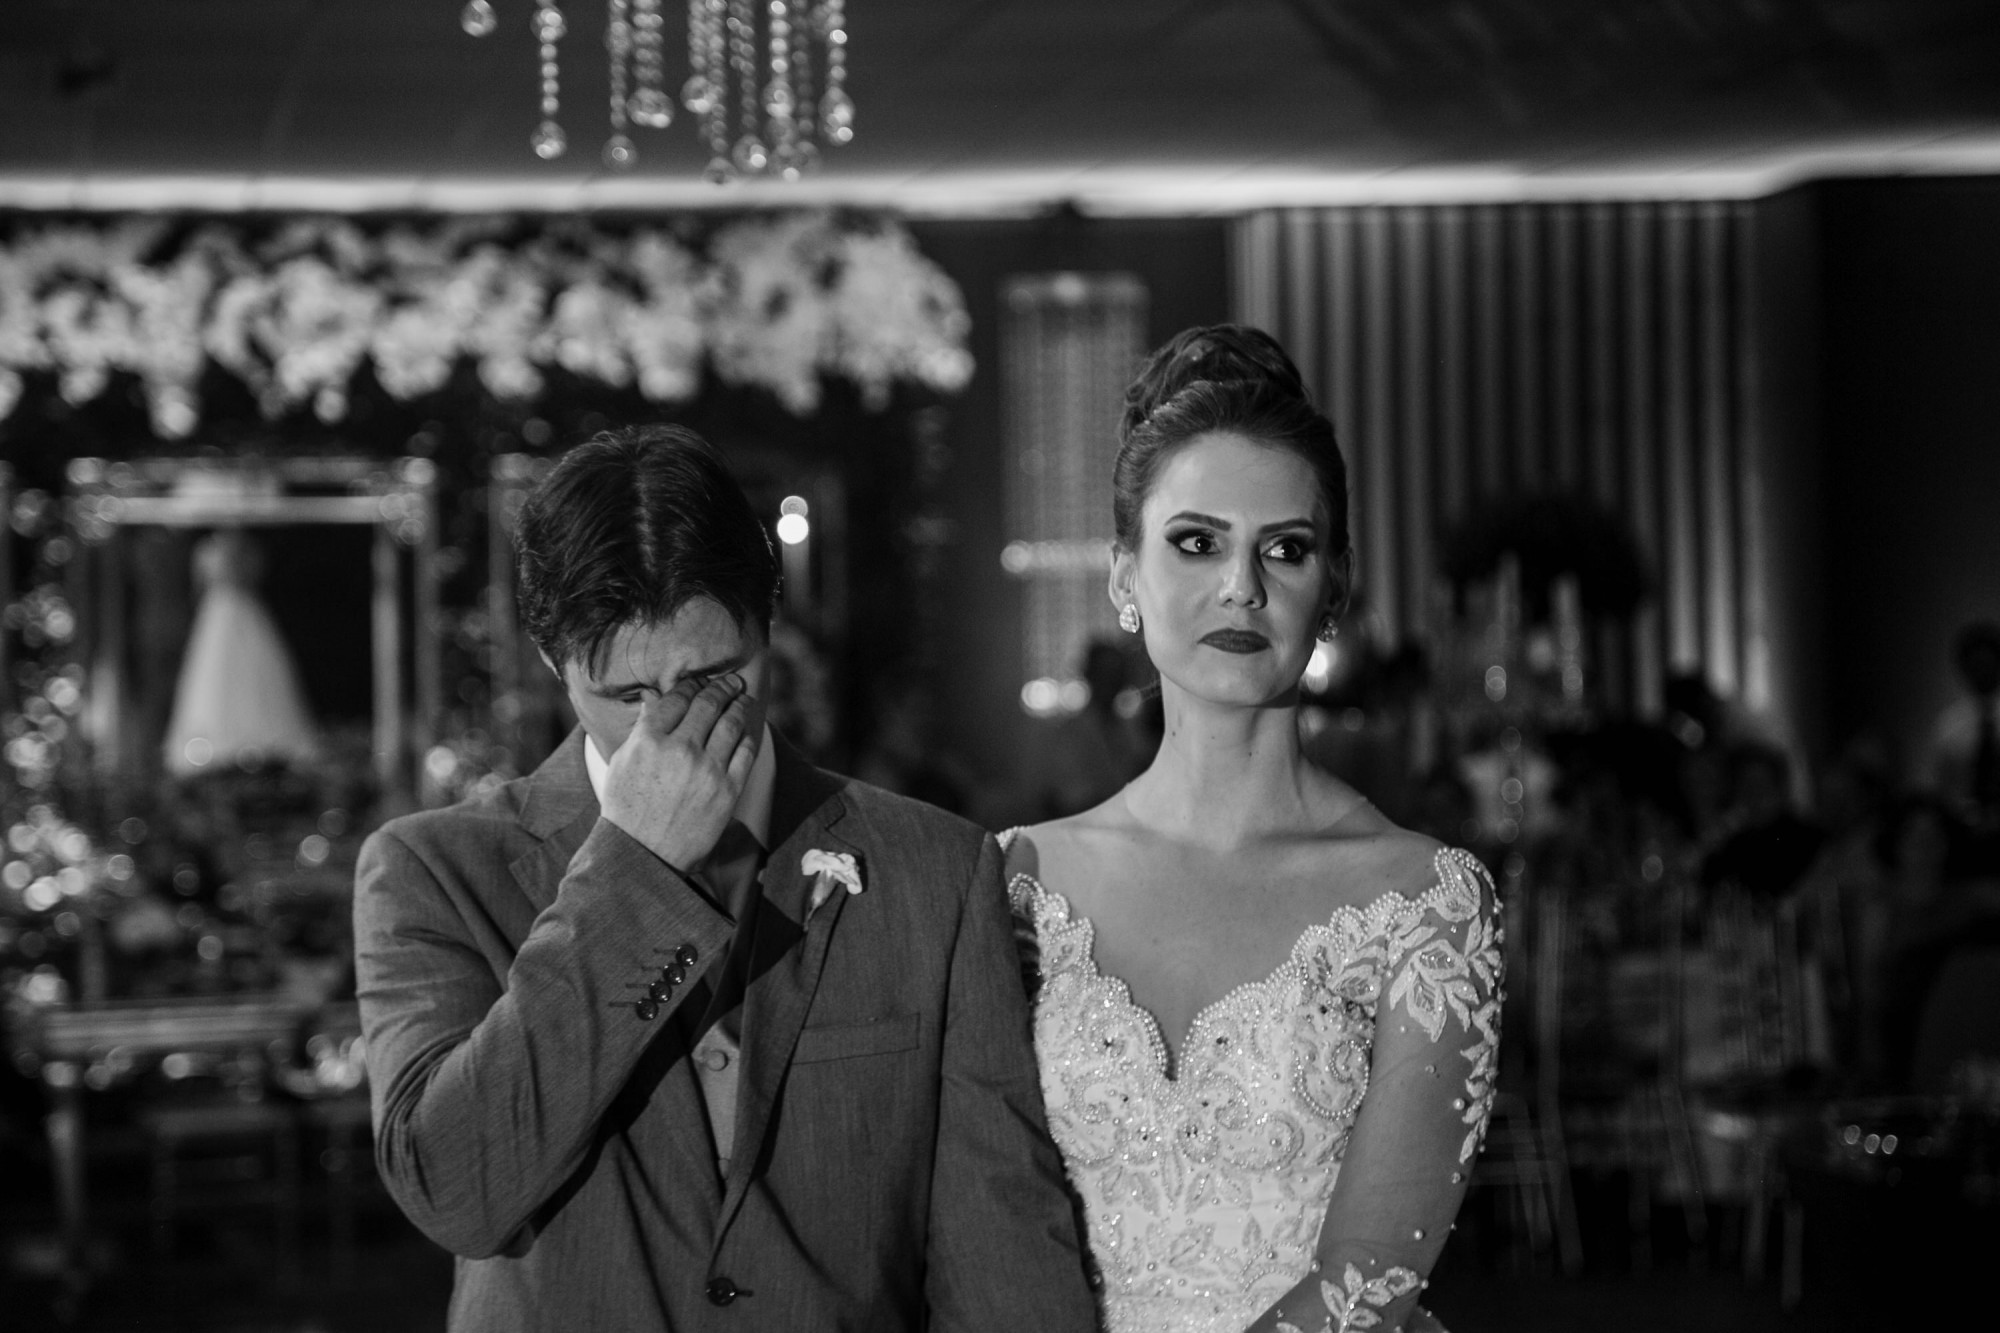 Casamento Anderson e Juliana Fioreli em Iporã Paraná - por Lorran Souza e Léia Sotile - Fotografos de casamentos - JA-3340